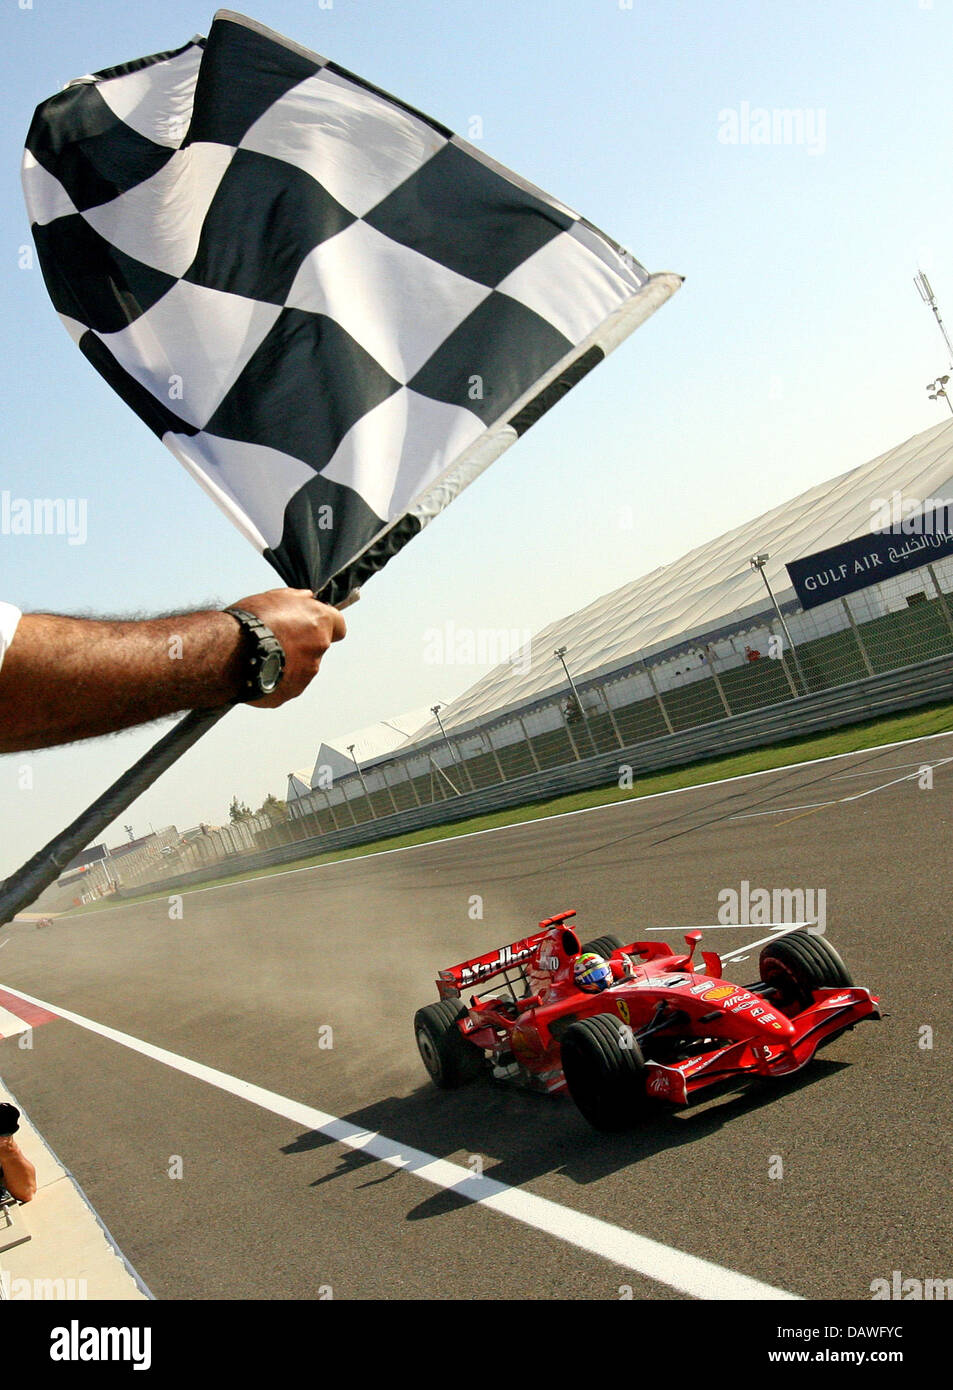 Pilote de Formule 1 brésilien Felipe Massa de la Scuderia Ferrari voit le drapeau à damier en premier dans le Grand Prix de Bahreïn au circuit de Sakhir, près de Manama, Bahreïn, dimanche 15 avril 2007. Photo : JENS BUETTNER Banque D'Images